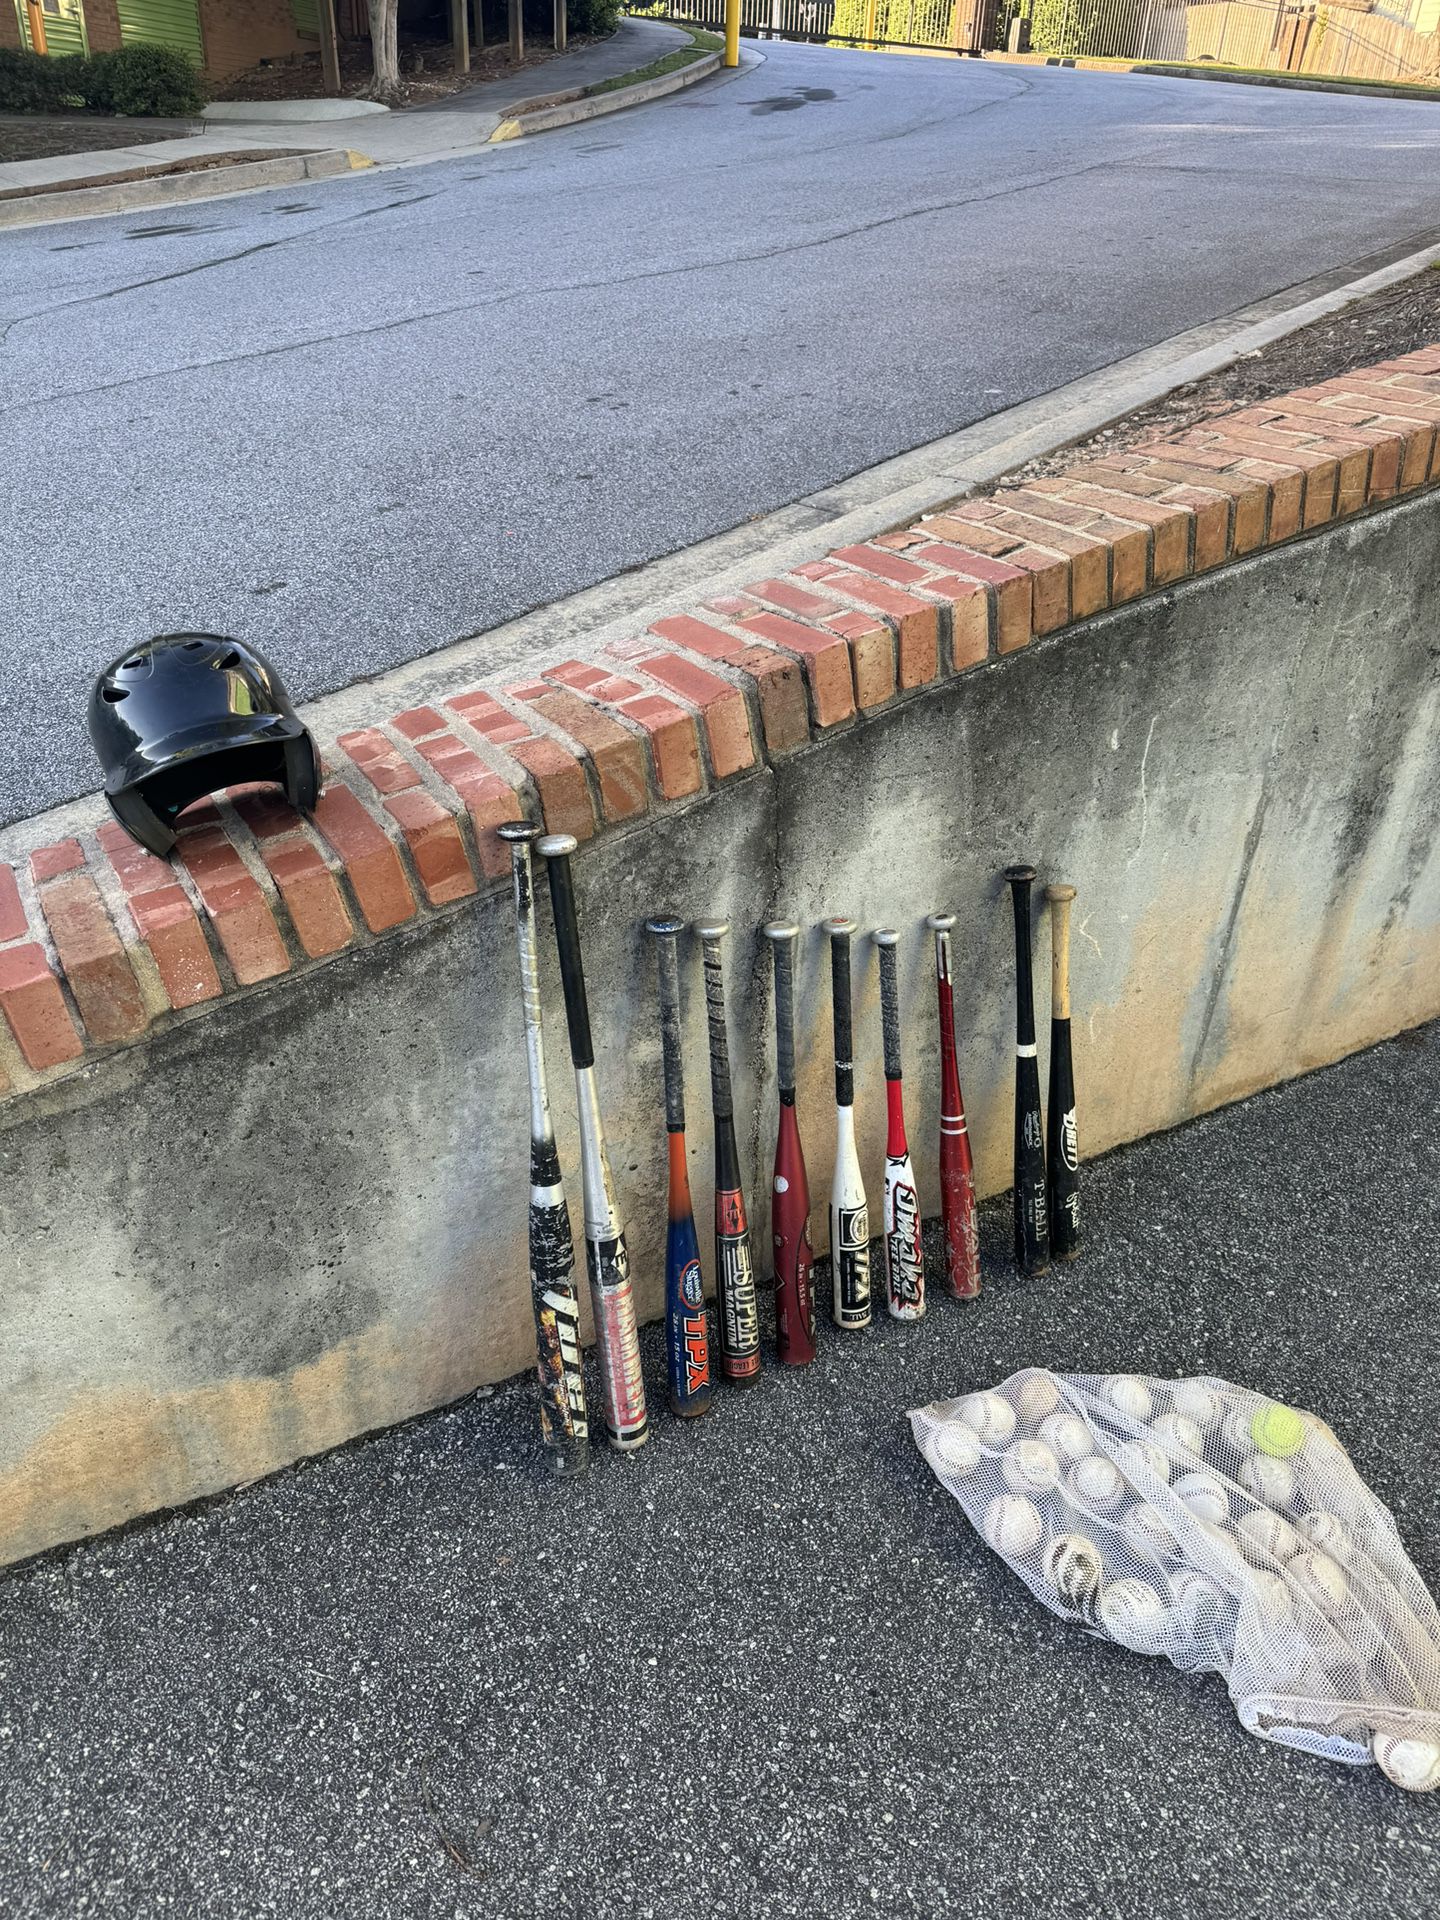 Baseball Bats ⚾️ 